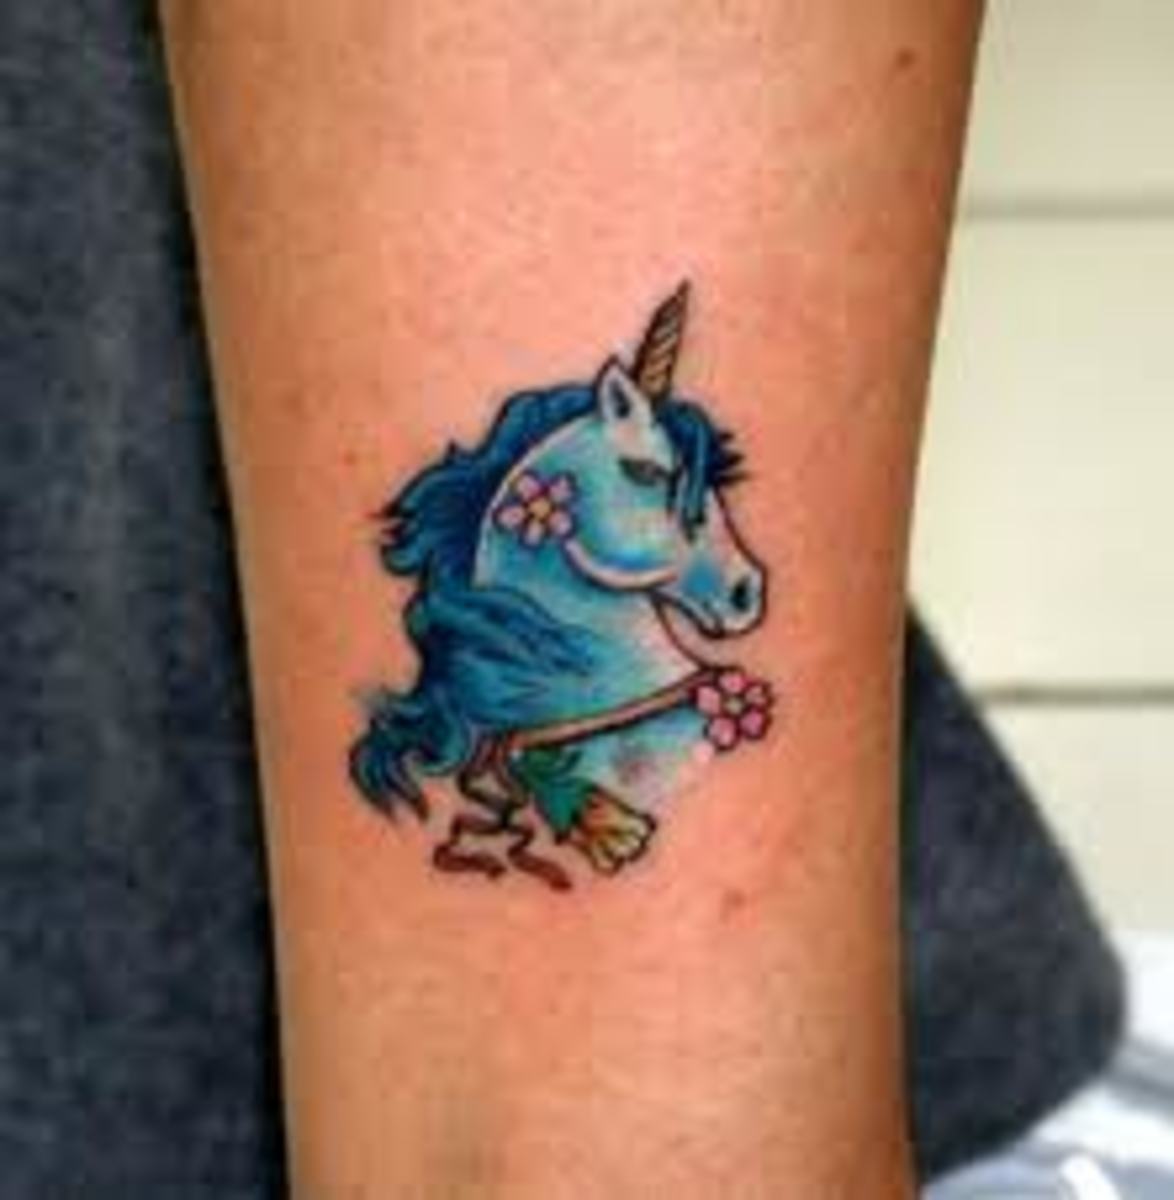 Tribal unicorn tattoo design square sticker - 7742 Reviews | Zazzle